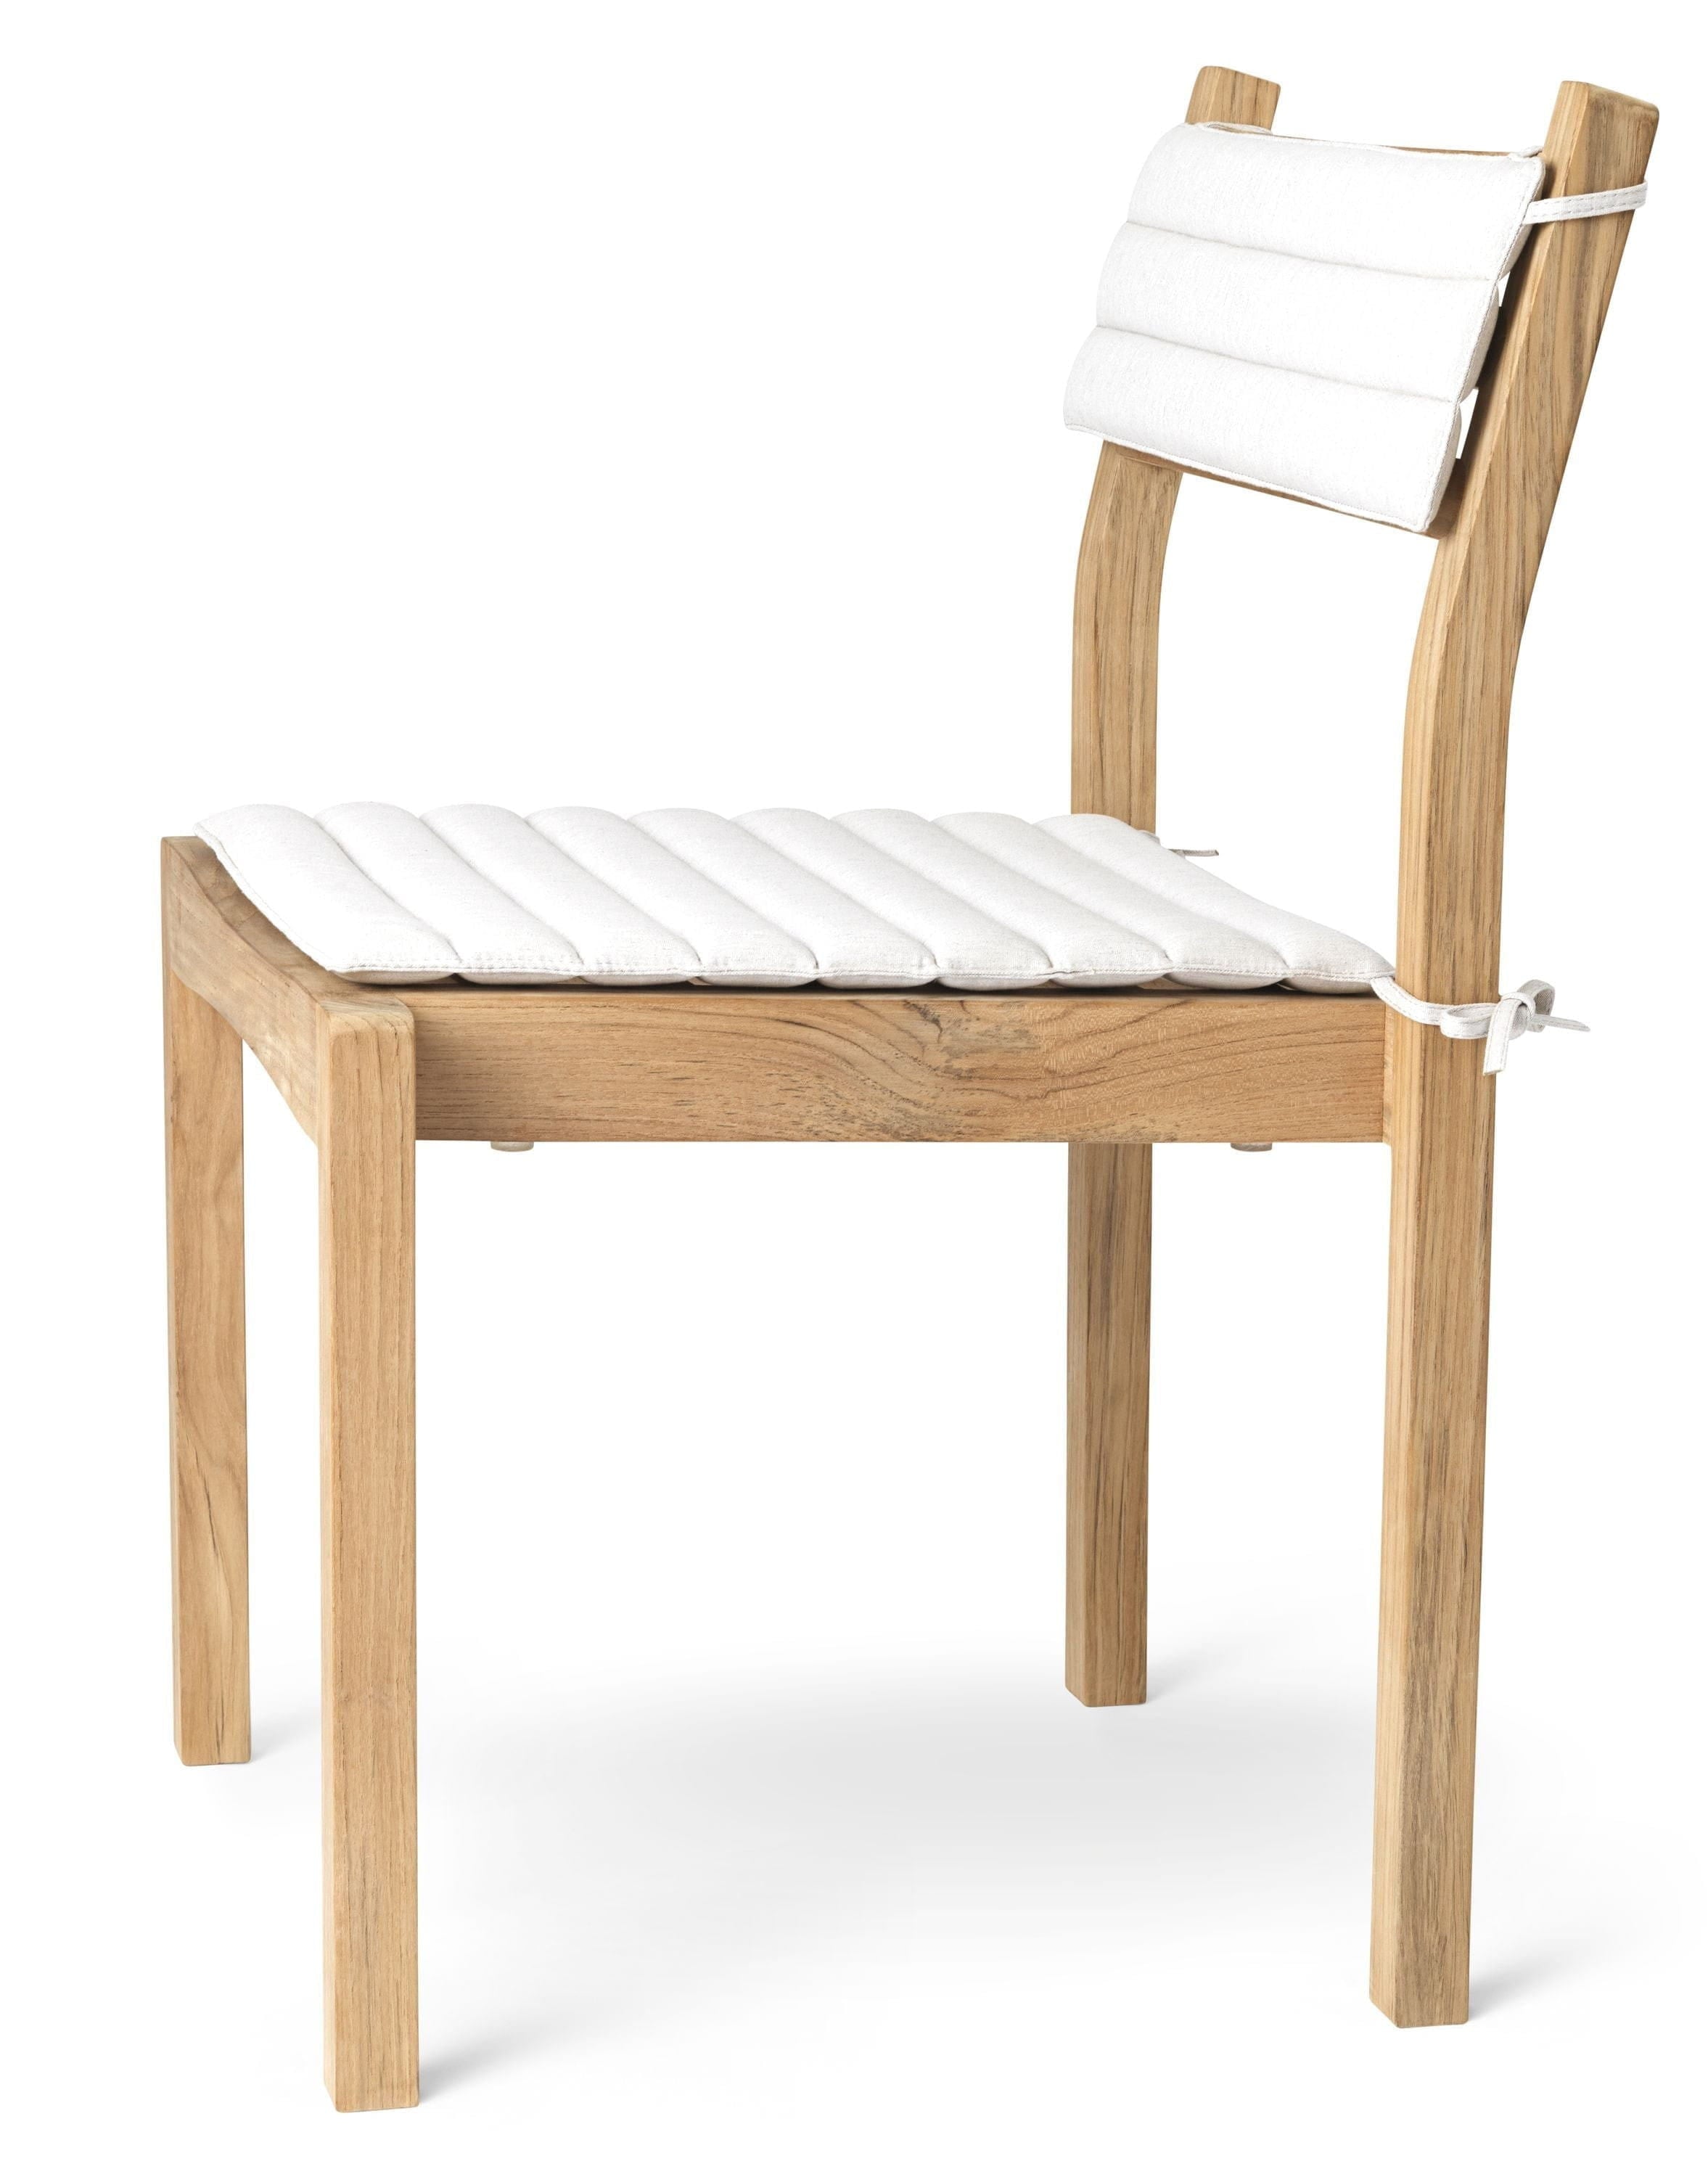 Carl Hansen Ah501 Outdoor Dining Chair